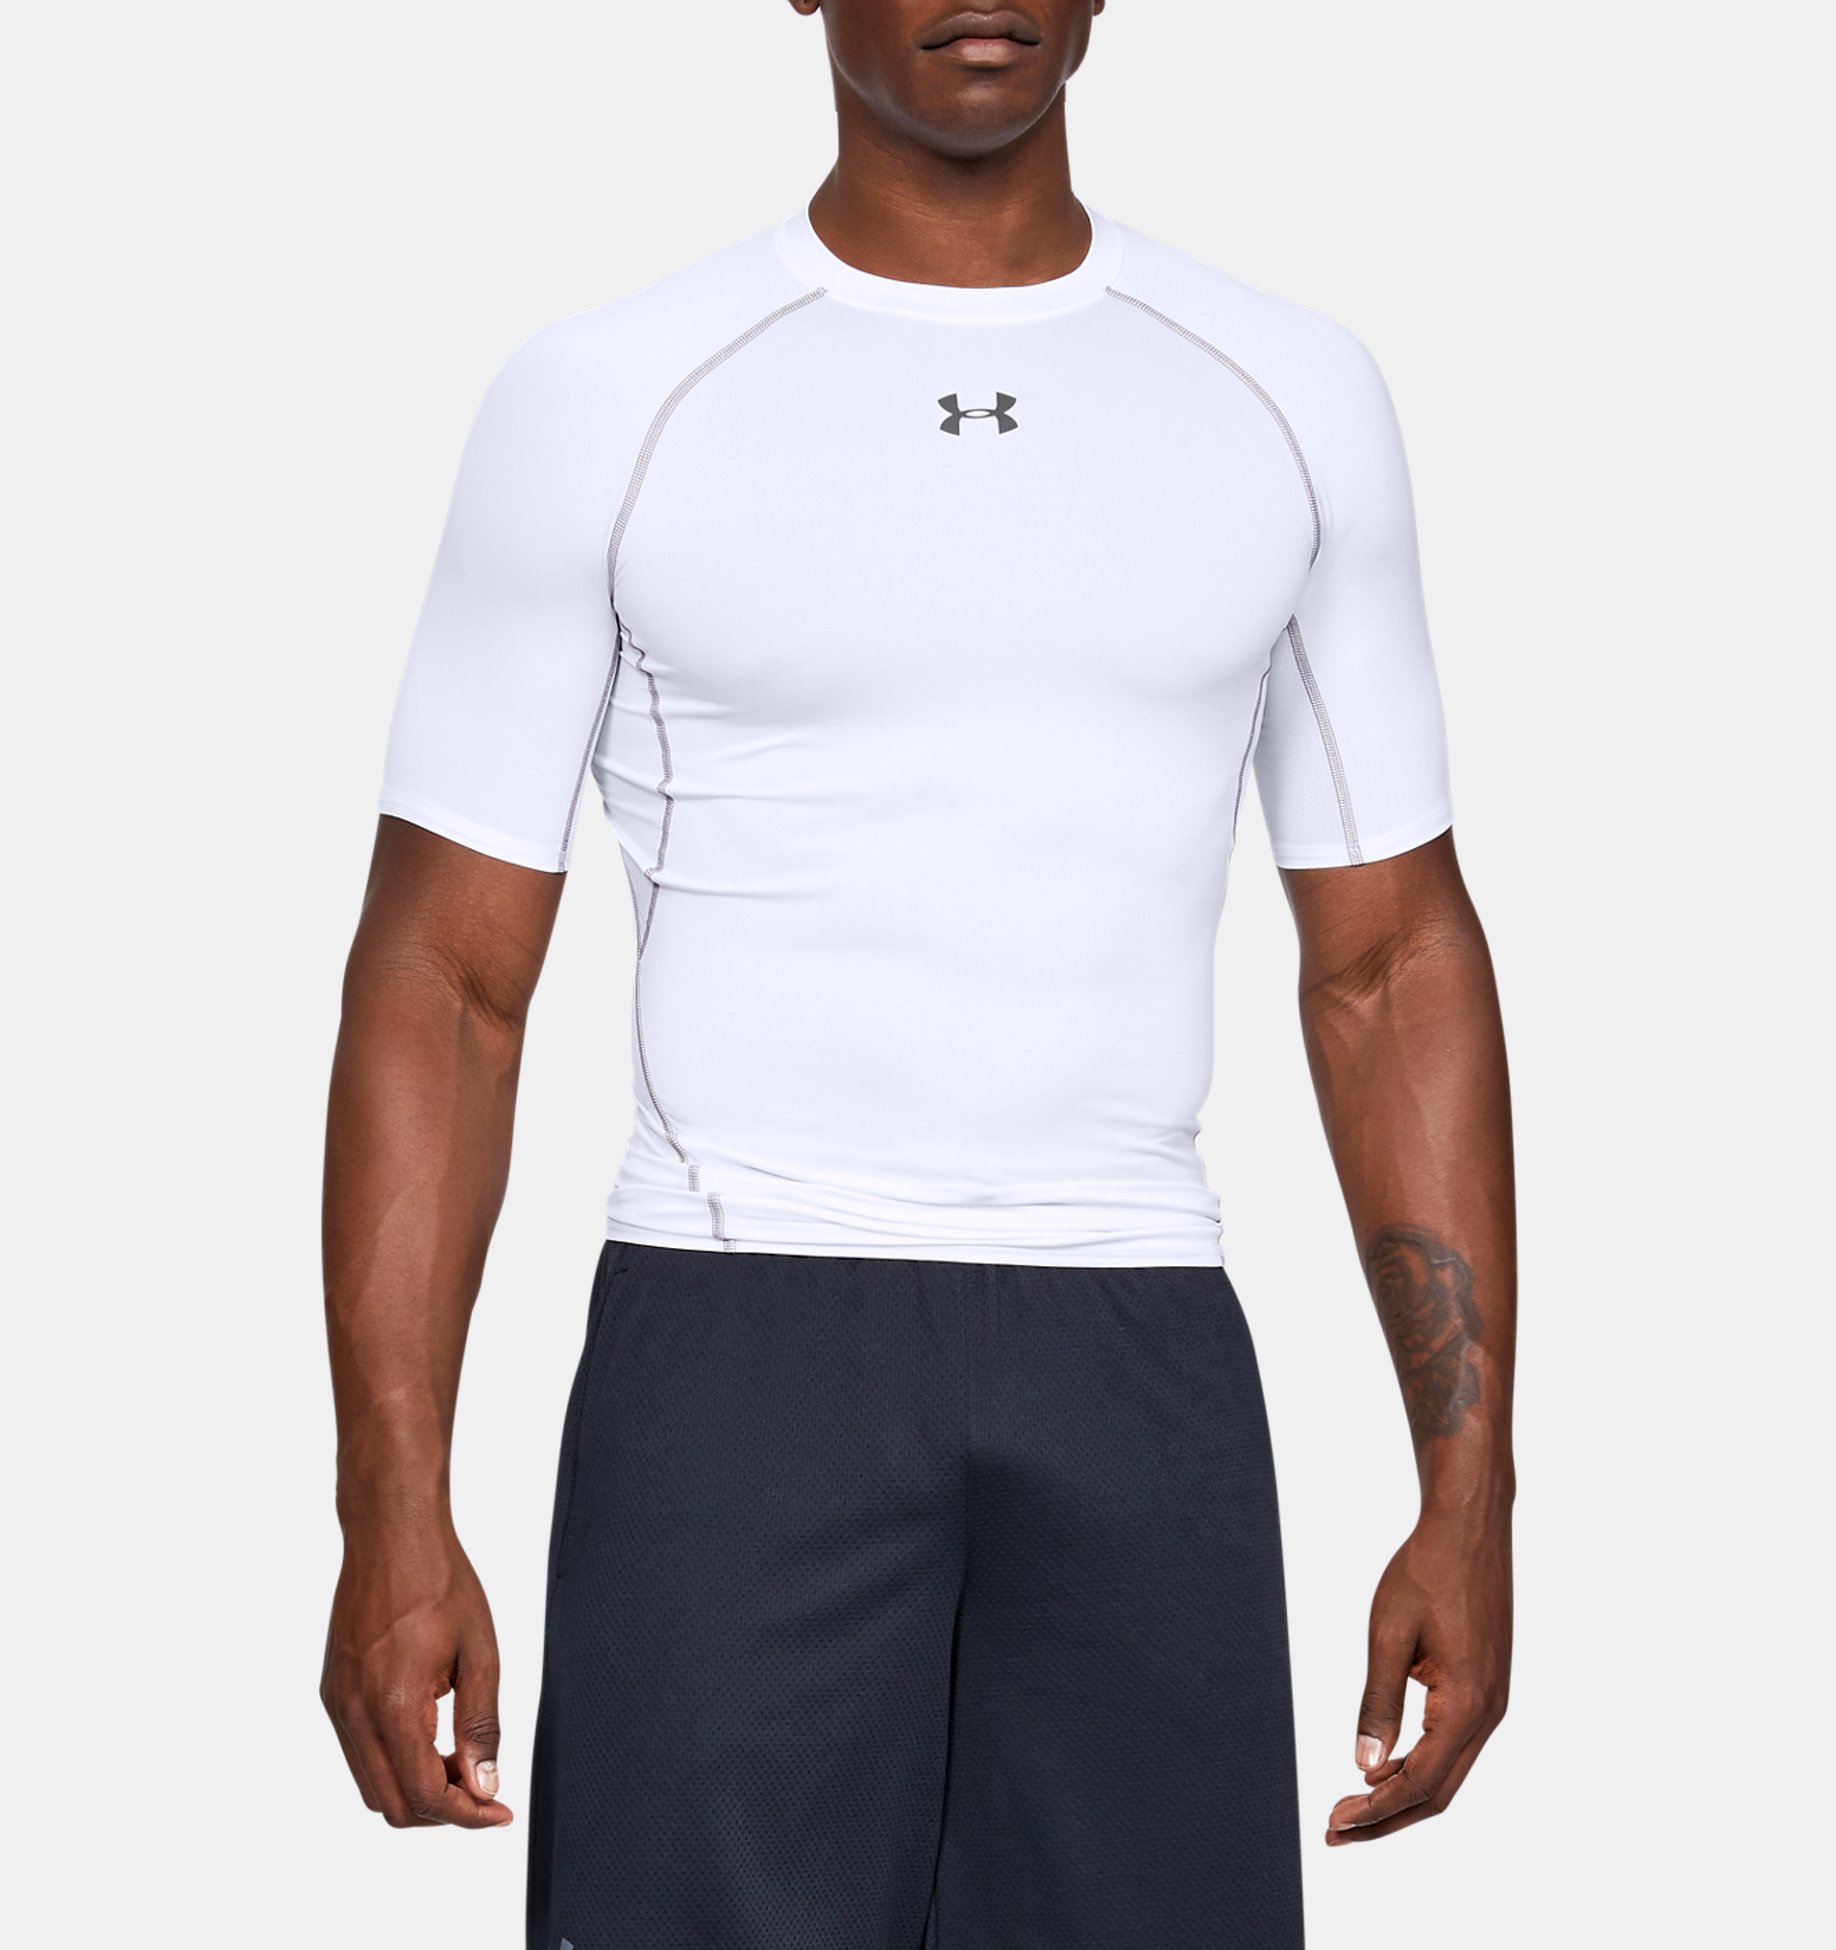 Underarmour Mens UA HeatGear Armour Short Sleeve Compression Shirt